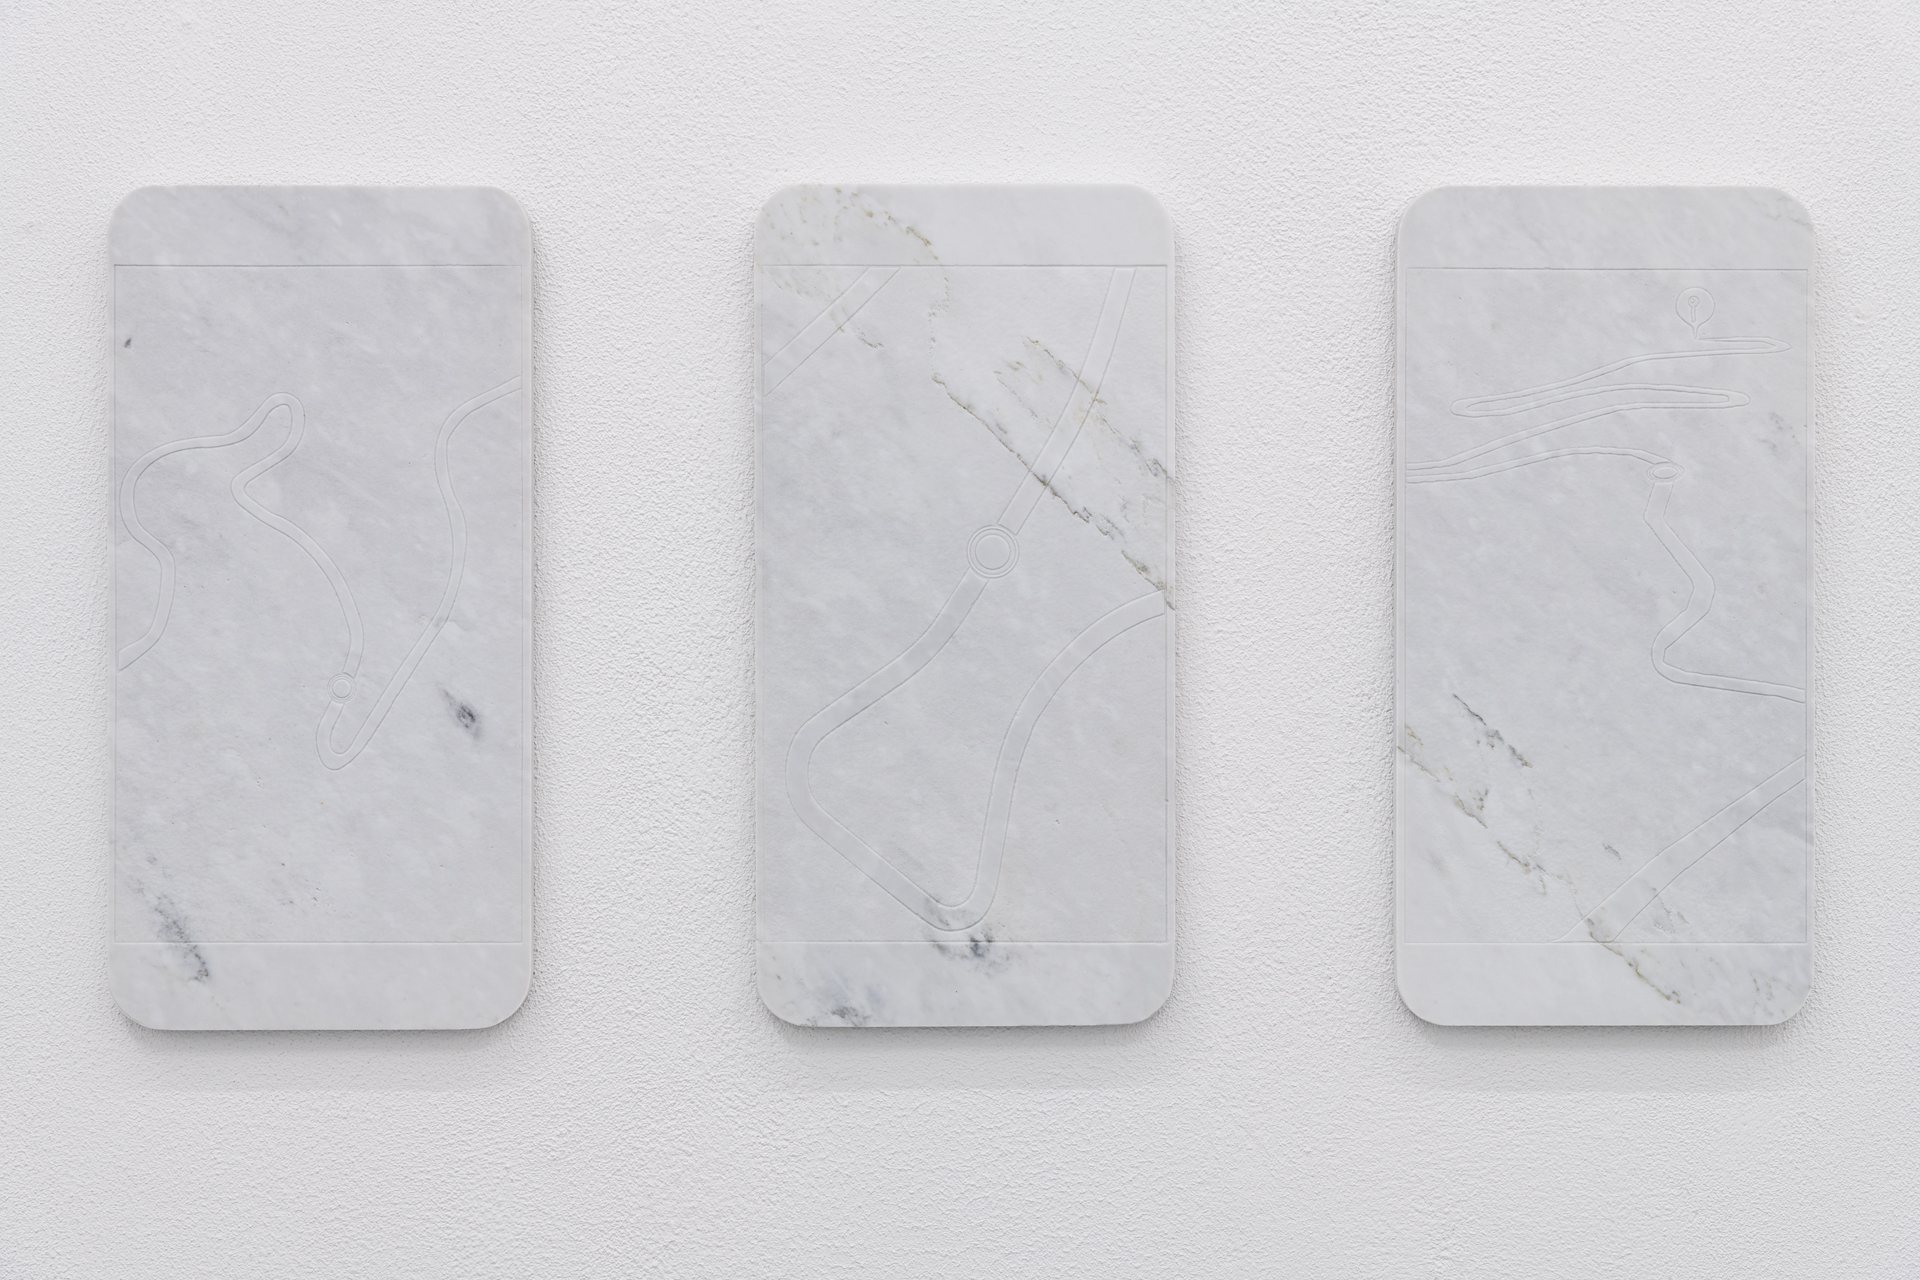 Lukas Liese, On Route nr. 2, 3 & 4, 2021, Carrara Marble, each 30cm x 60cm x 2cm.